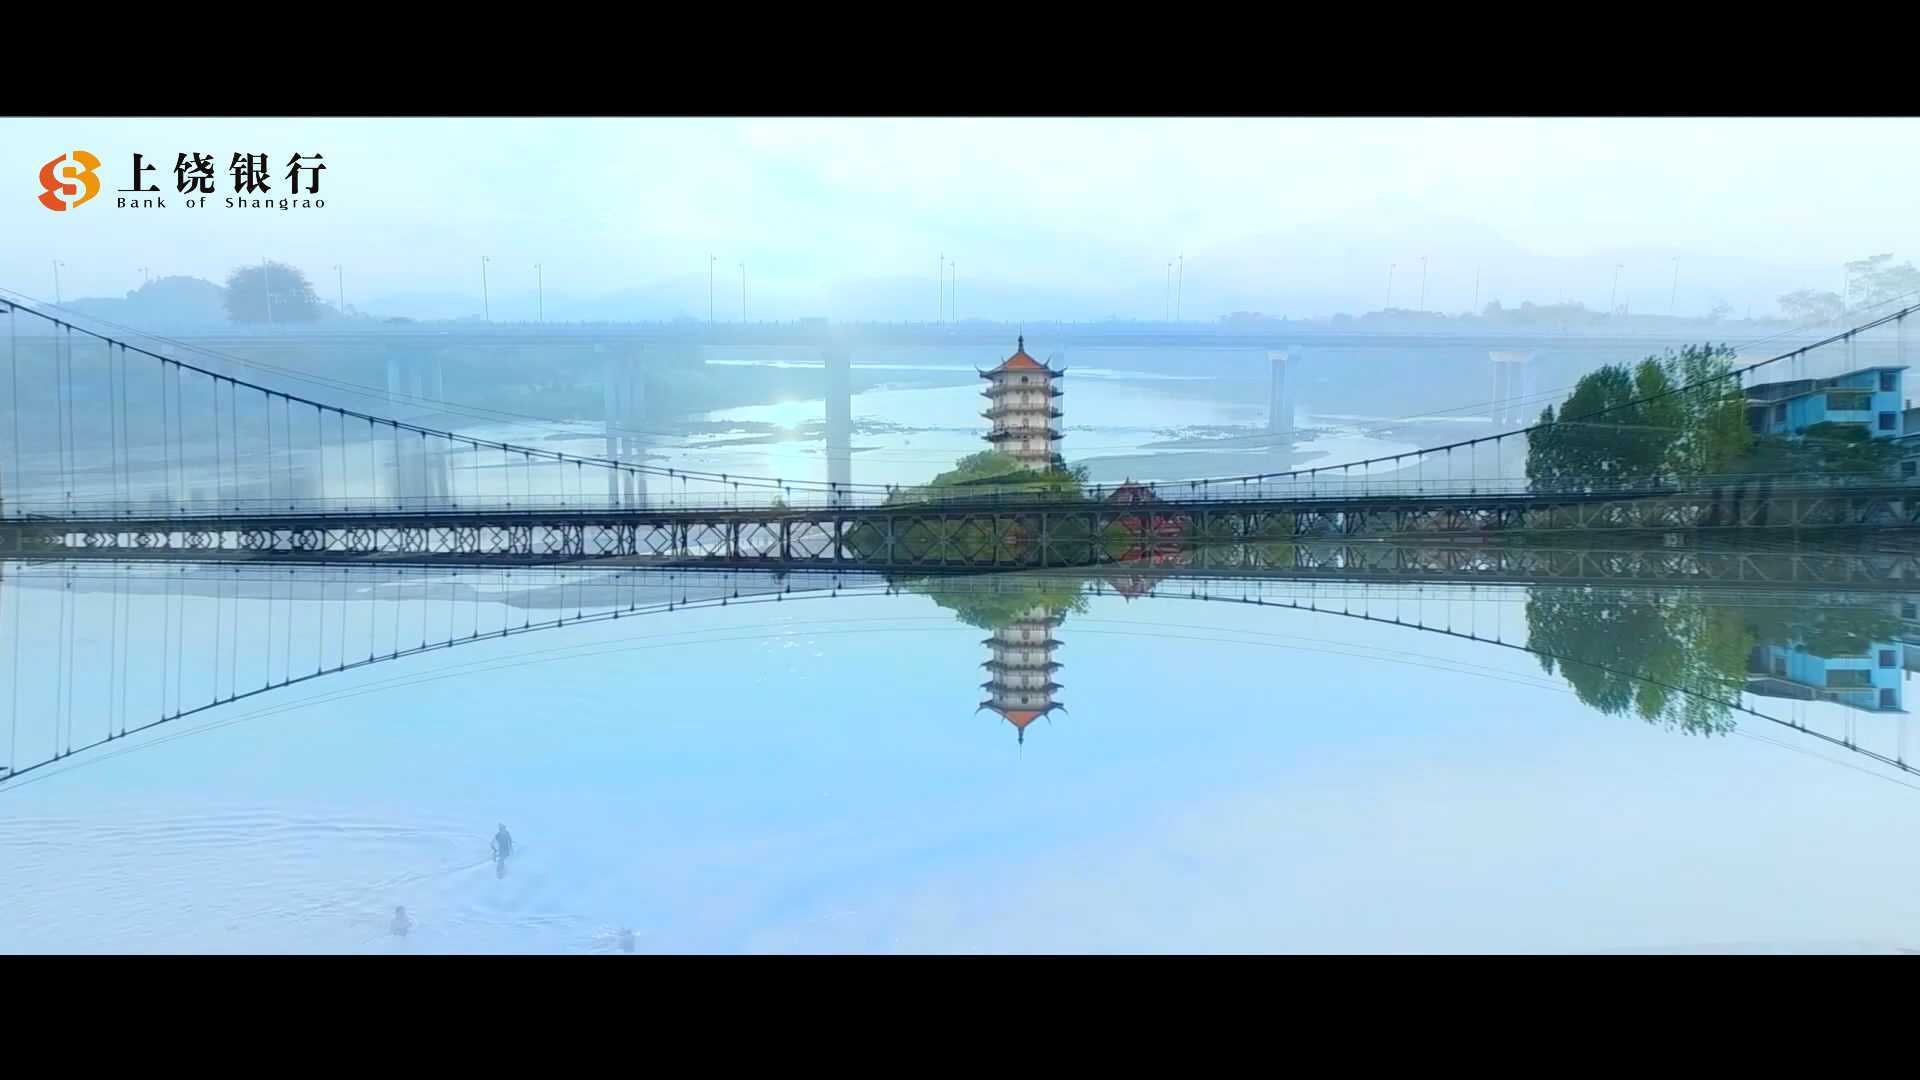 《桔香梦-金融心》 休闲南丰城市宣传片